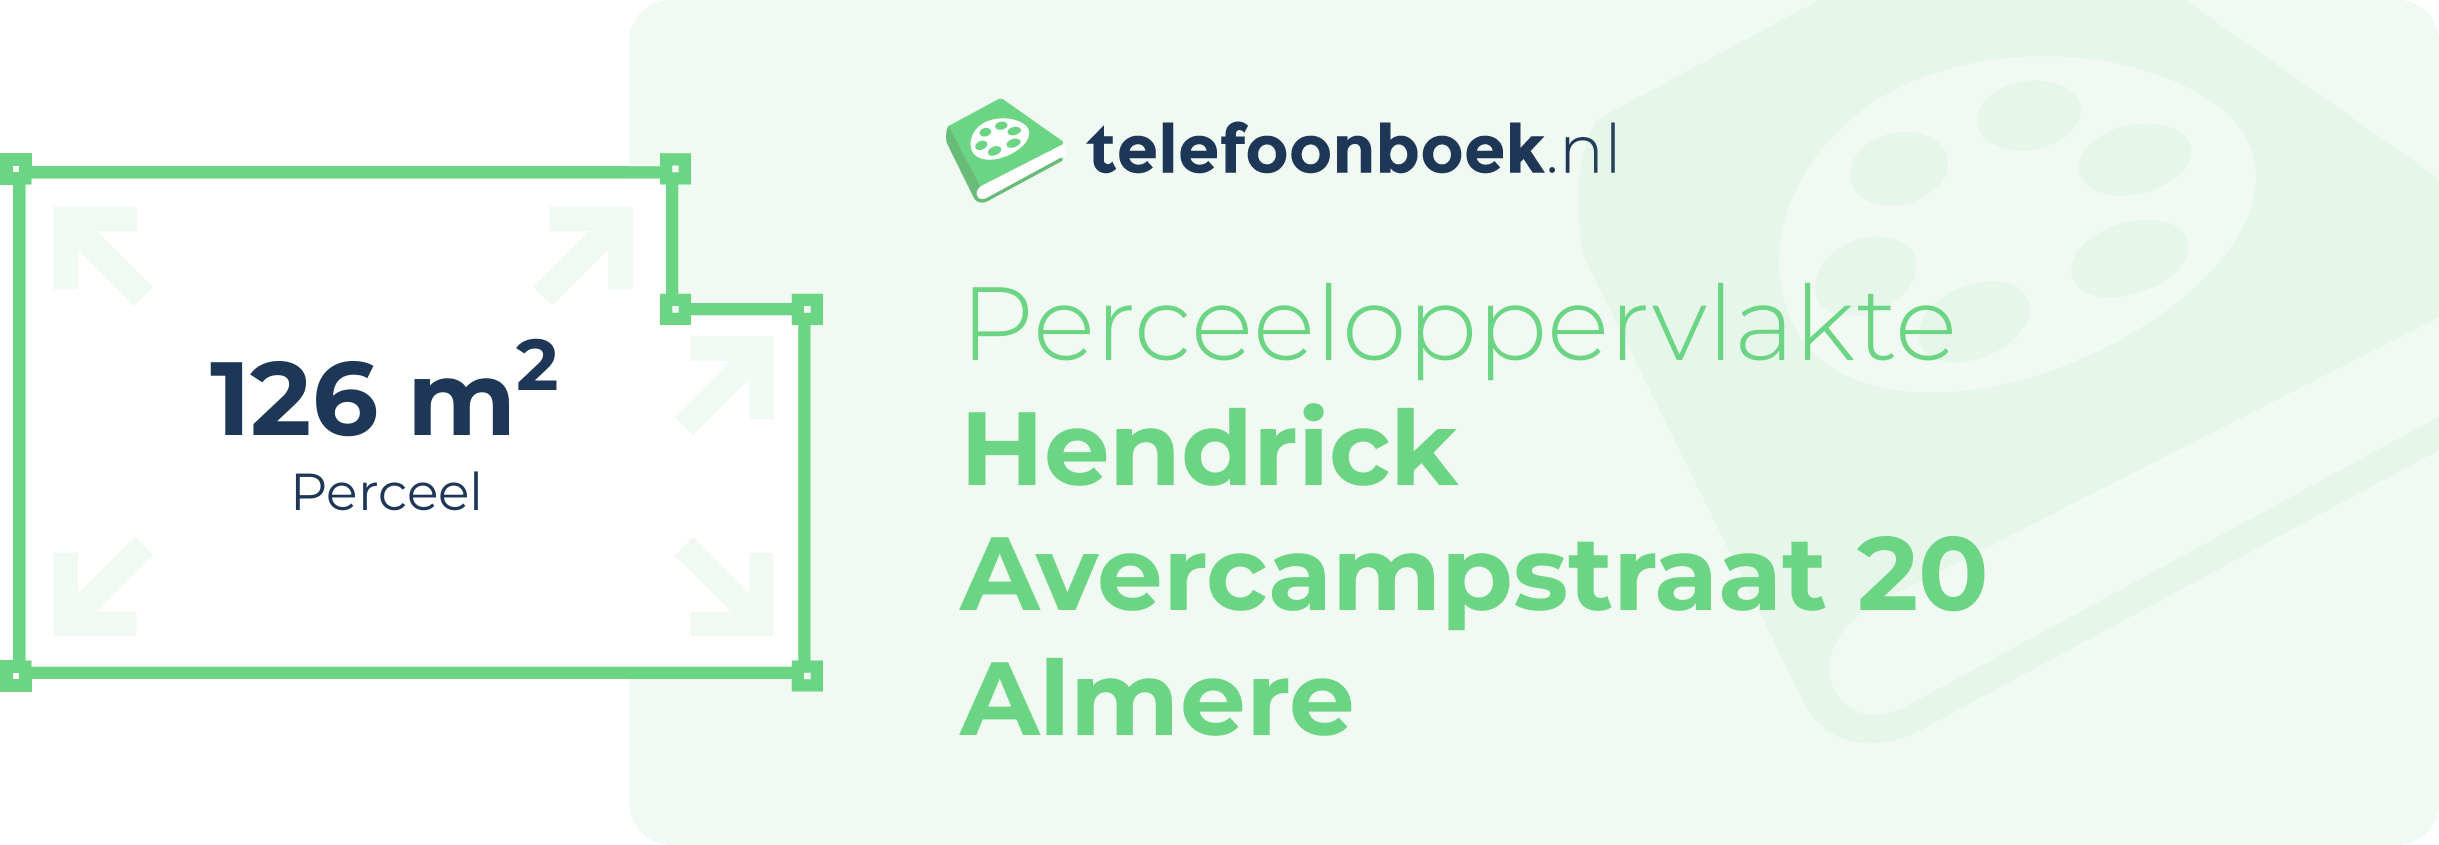 Perceeloppervlakte Hendrick Avercampstraat 20 Almere